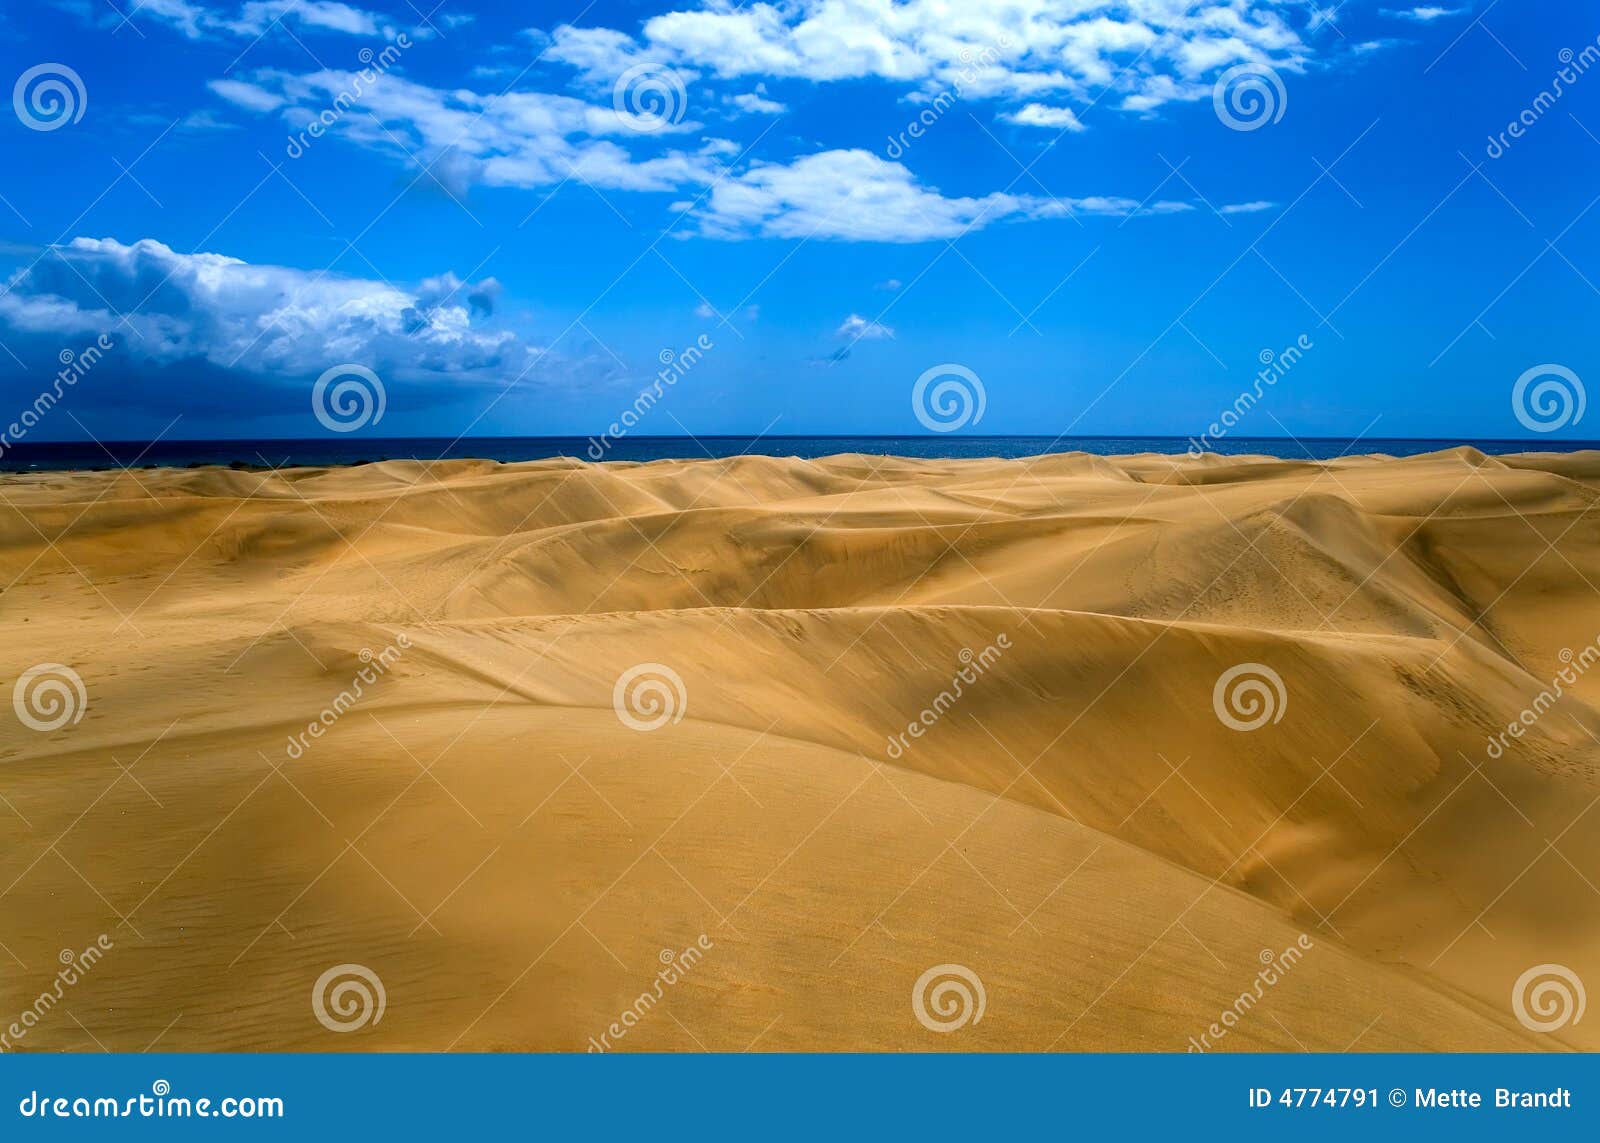 desert in gran canaria